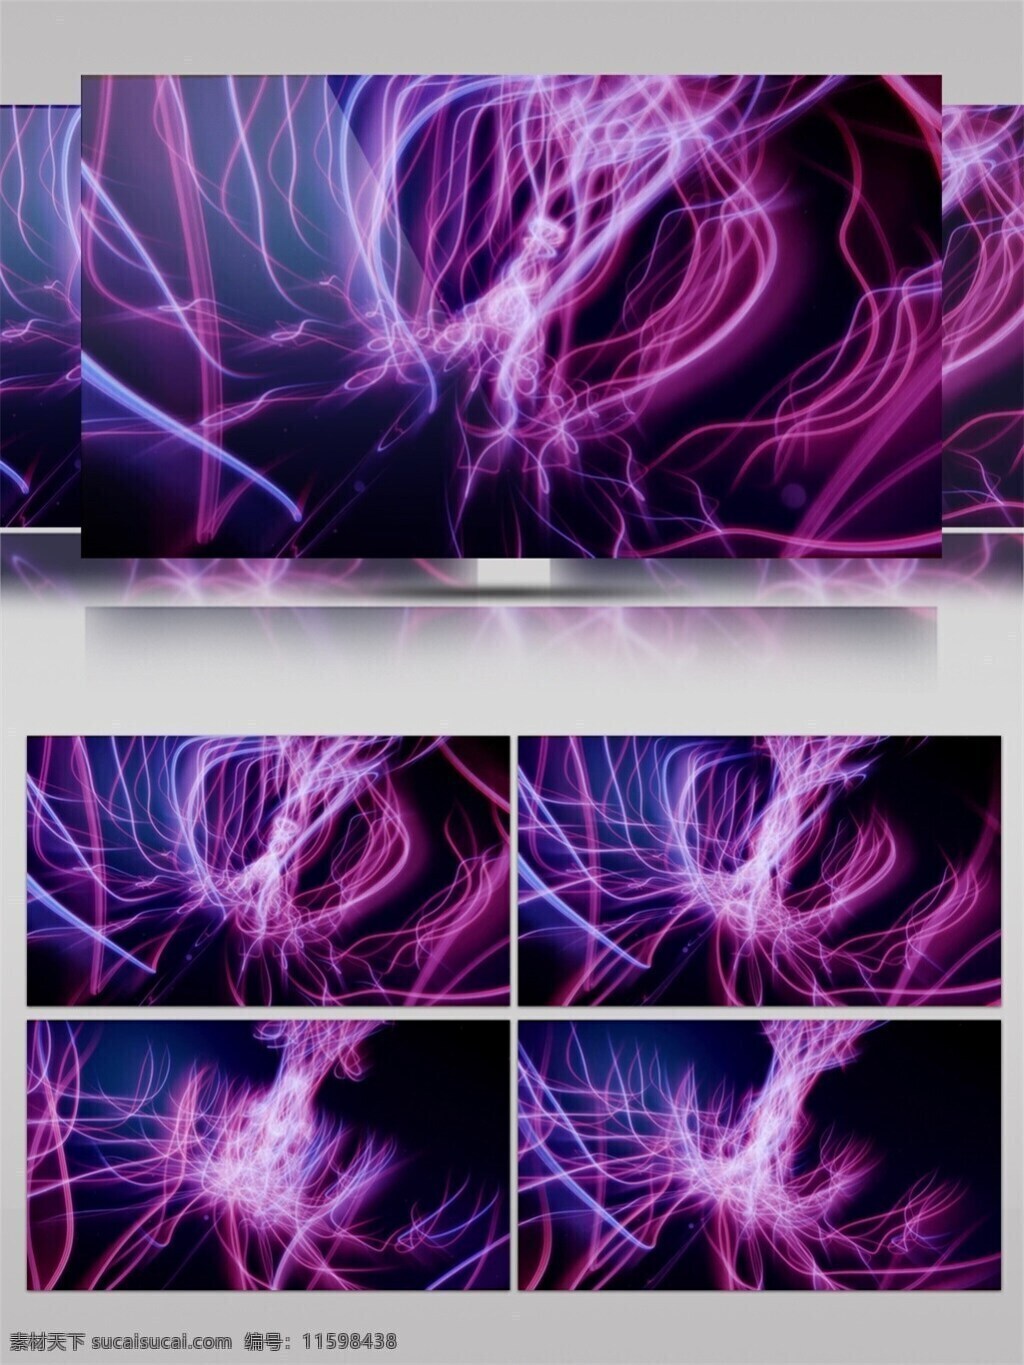 神经 脉冲 光束 视频 3d视频素材 粉色 酒吧舞台 特效视频素材 晚会舞台背景 舞台灯光 紫色